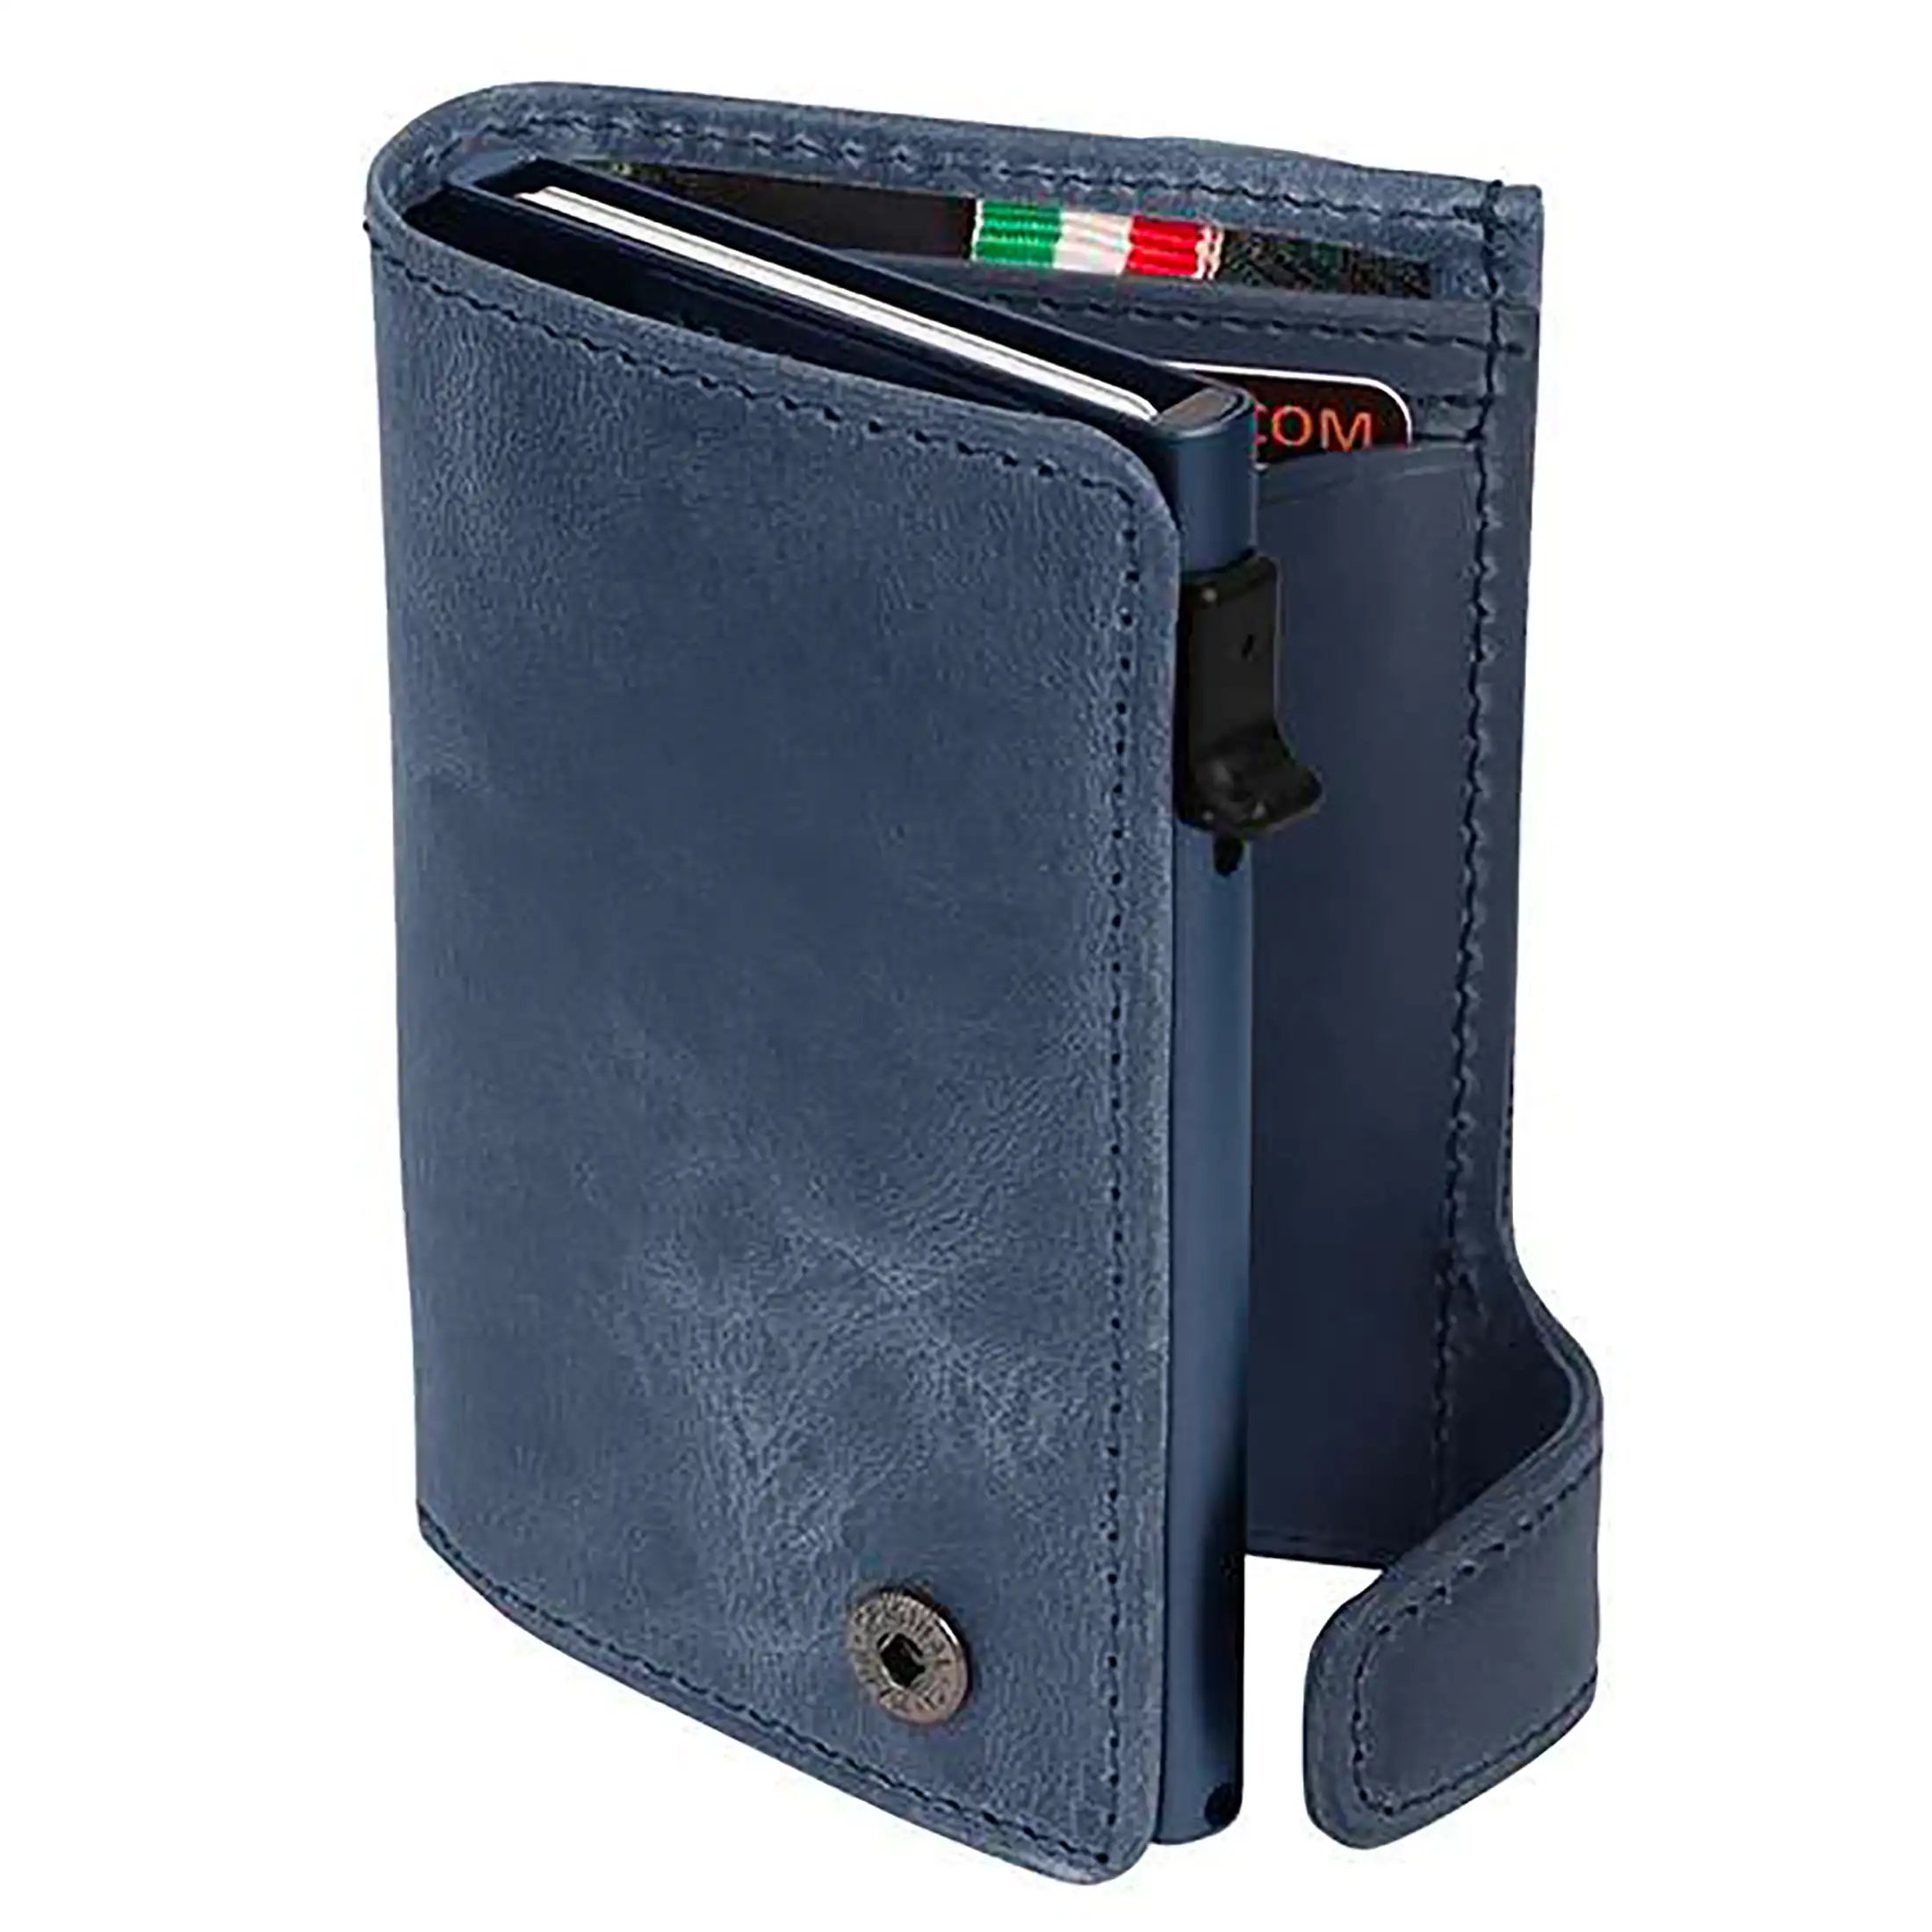 Tony Perotti Furbo Arno porte-cartes de crédit avec compartiment monnaie 10 cm - marron foncé